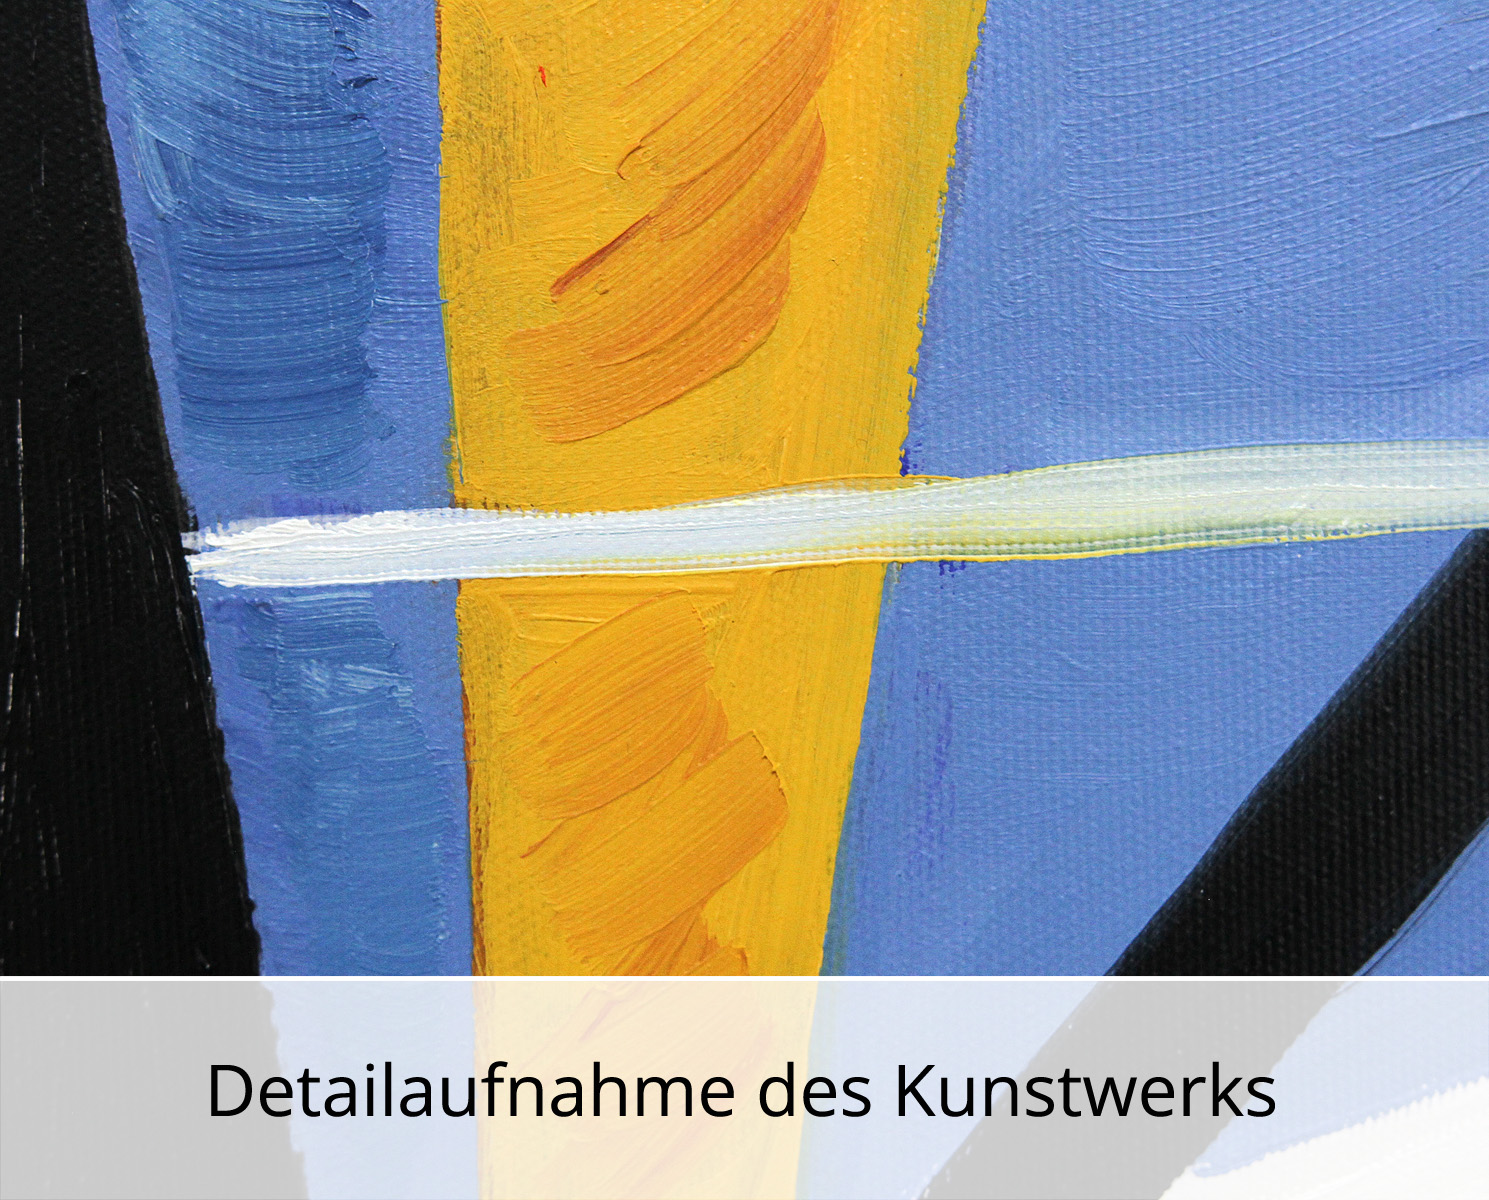 M. Cieśla: "See in abstrakten Formen", Original/Unikat, expressionistisches Gemälde